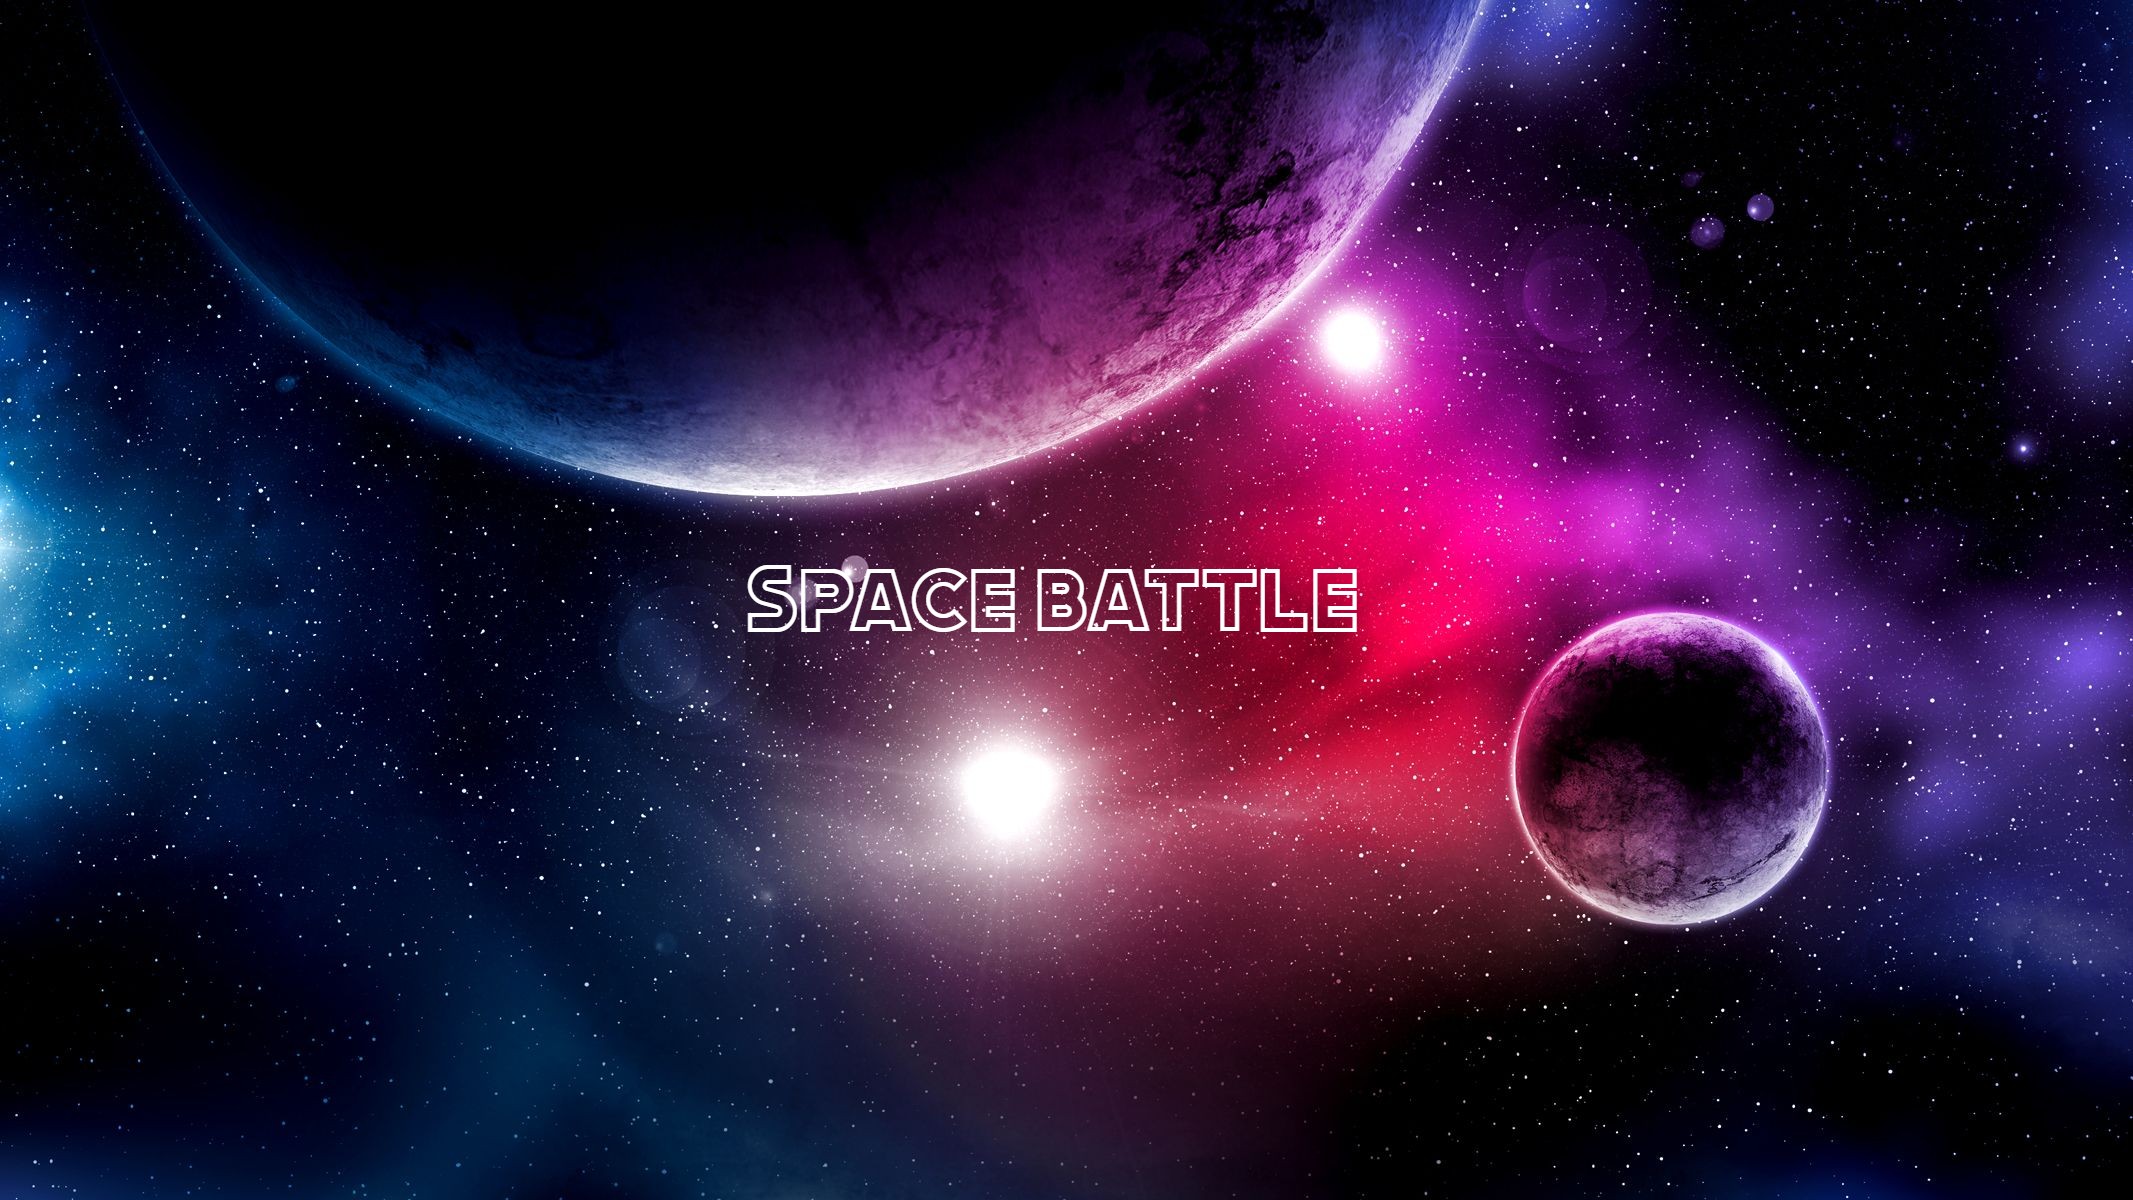 Space battle